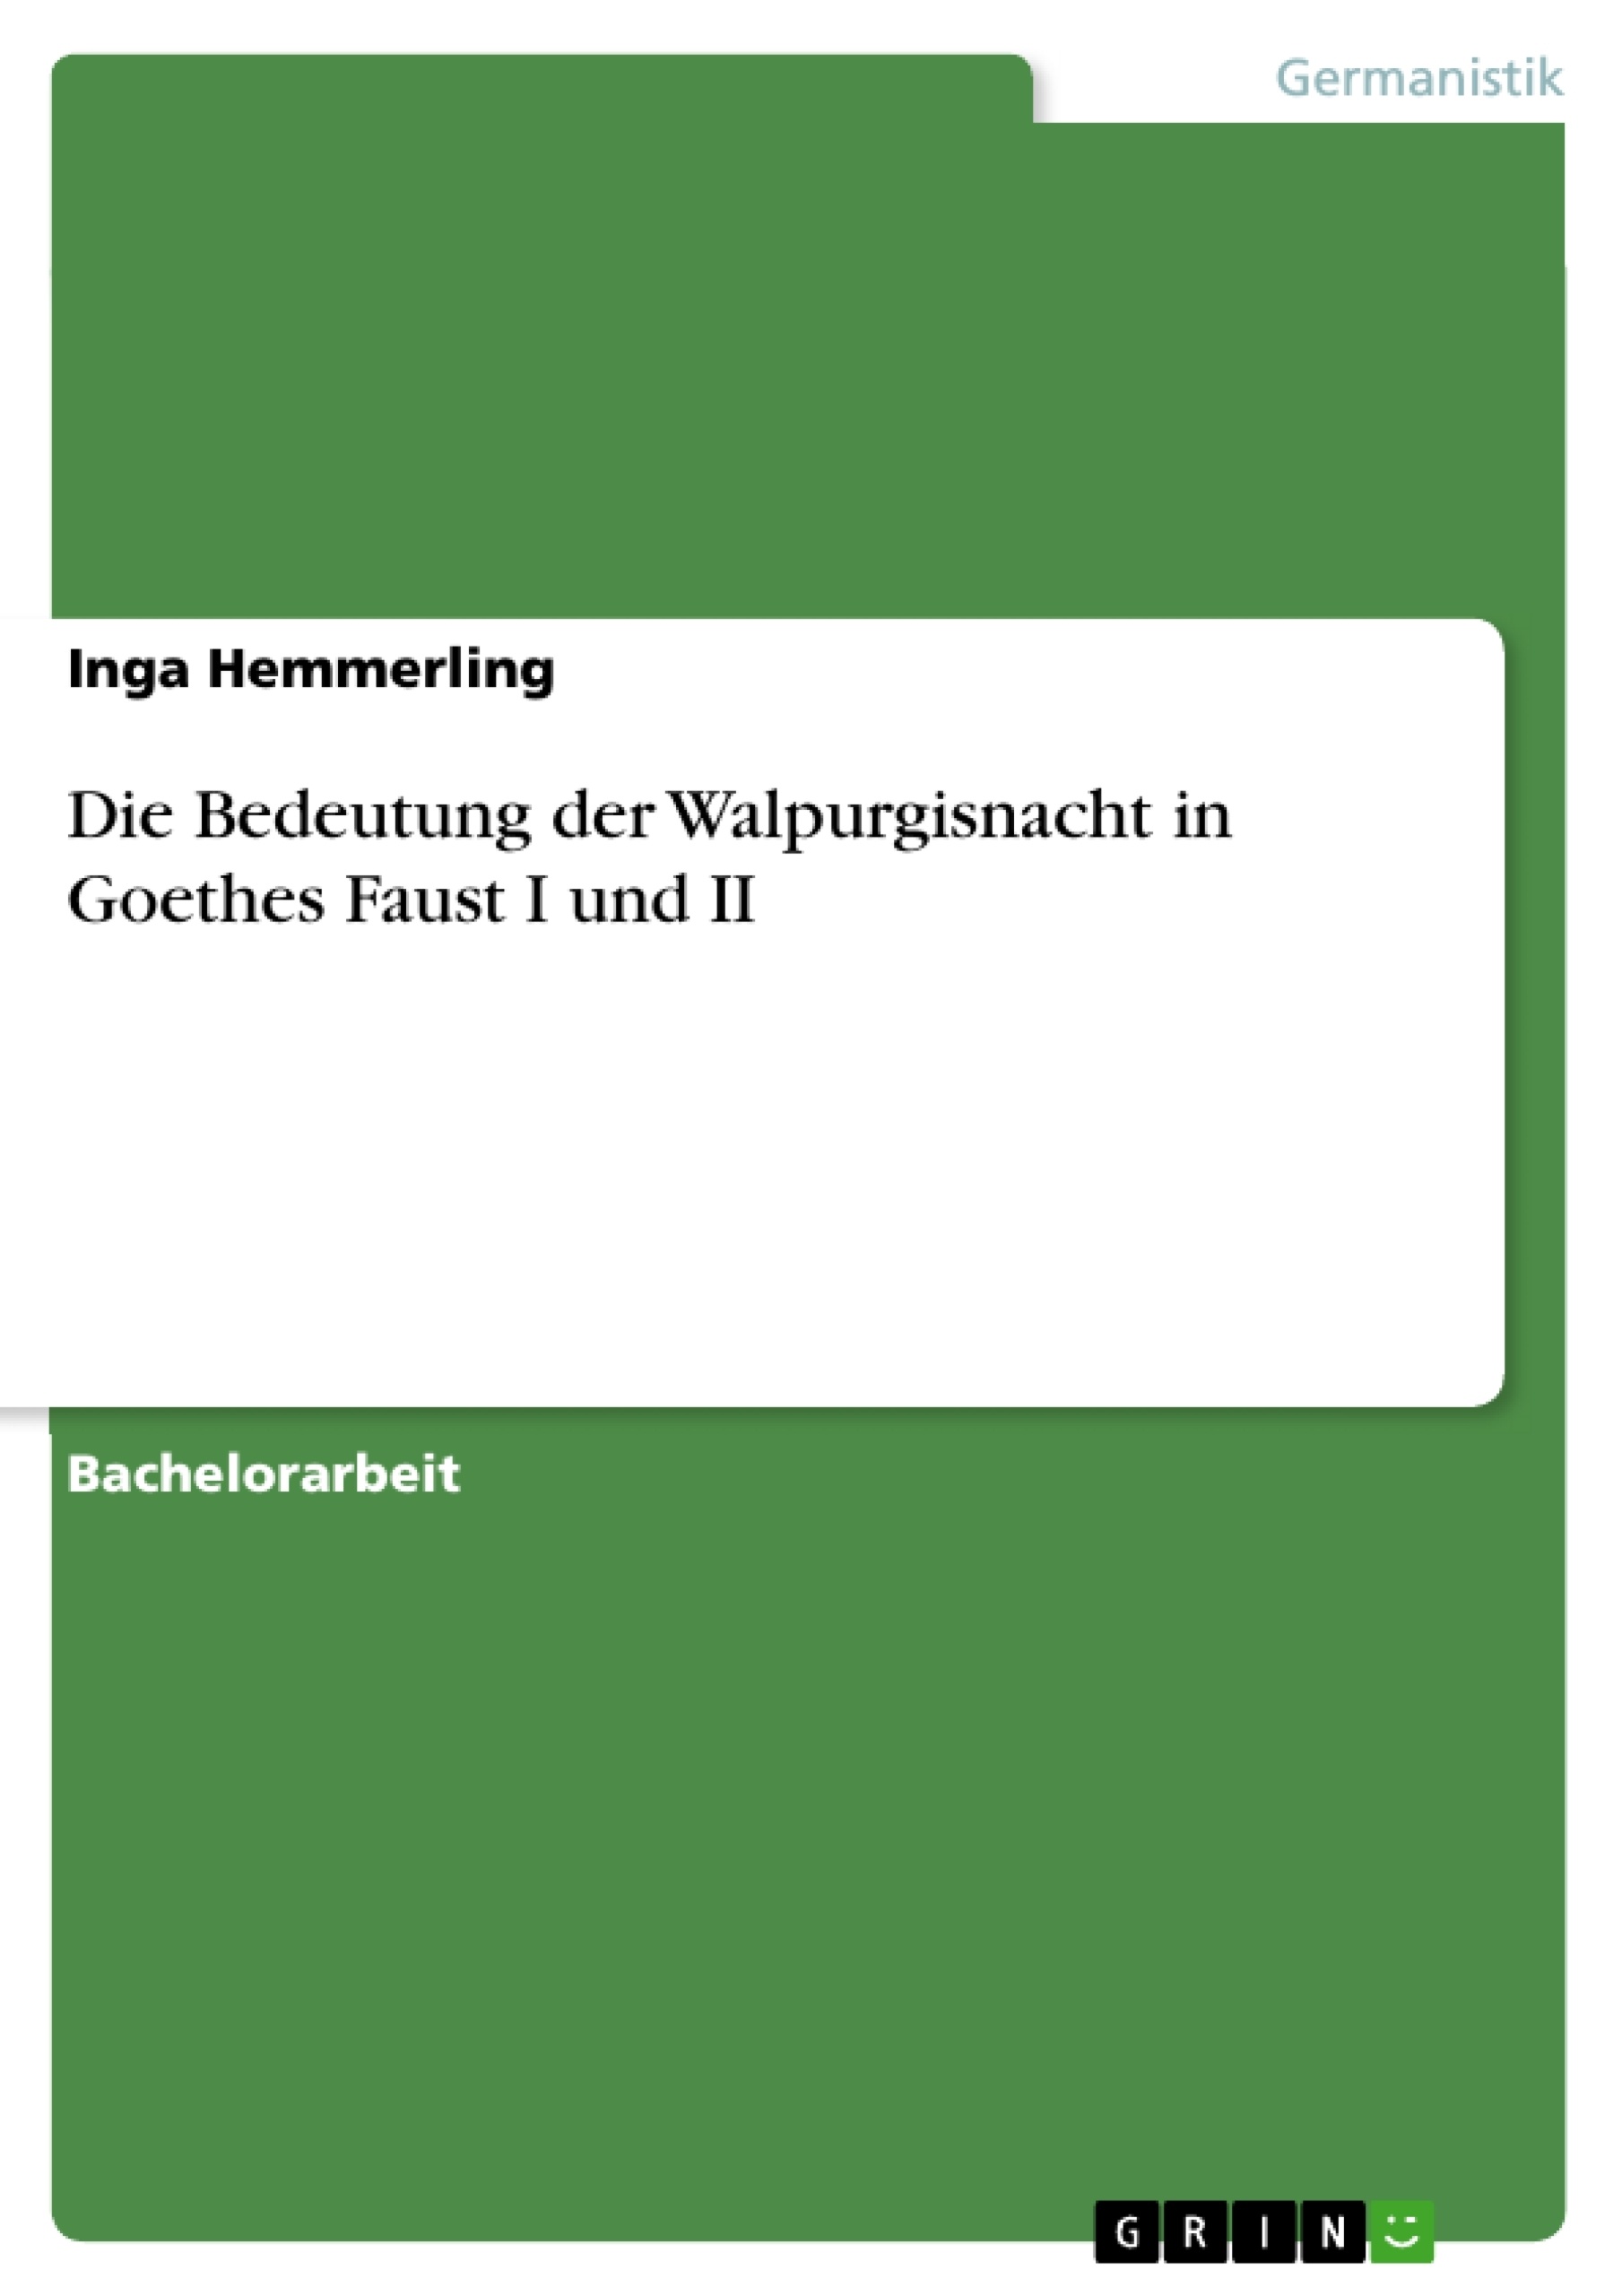 Die Bedeutung Der Walpurgisnacht In Goethes Faust I Und Ii Grin